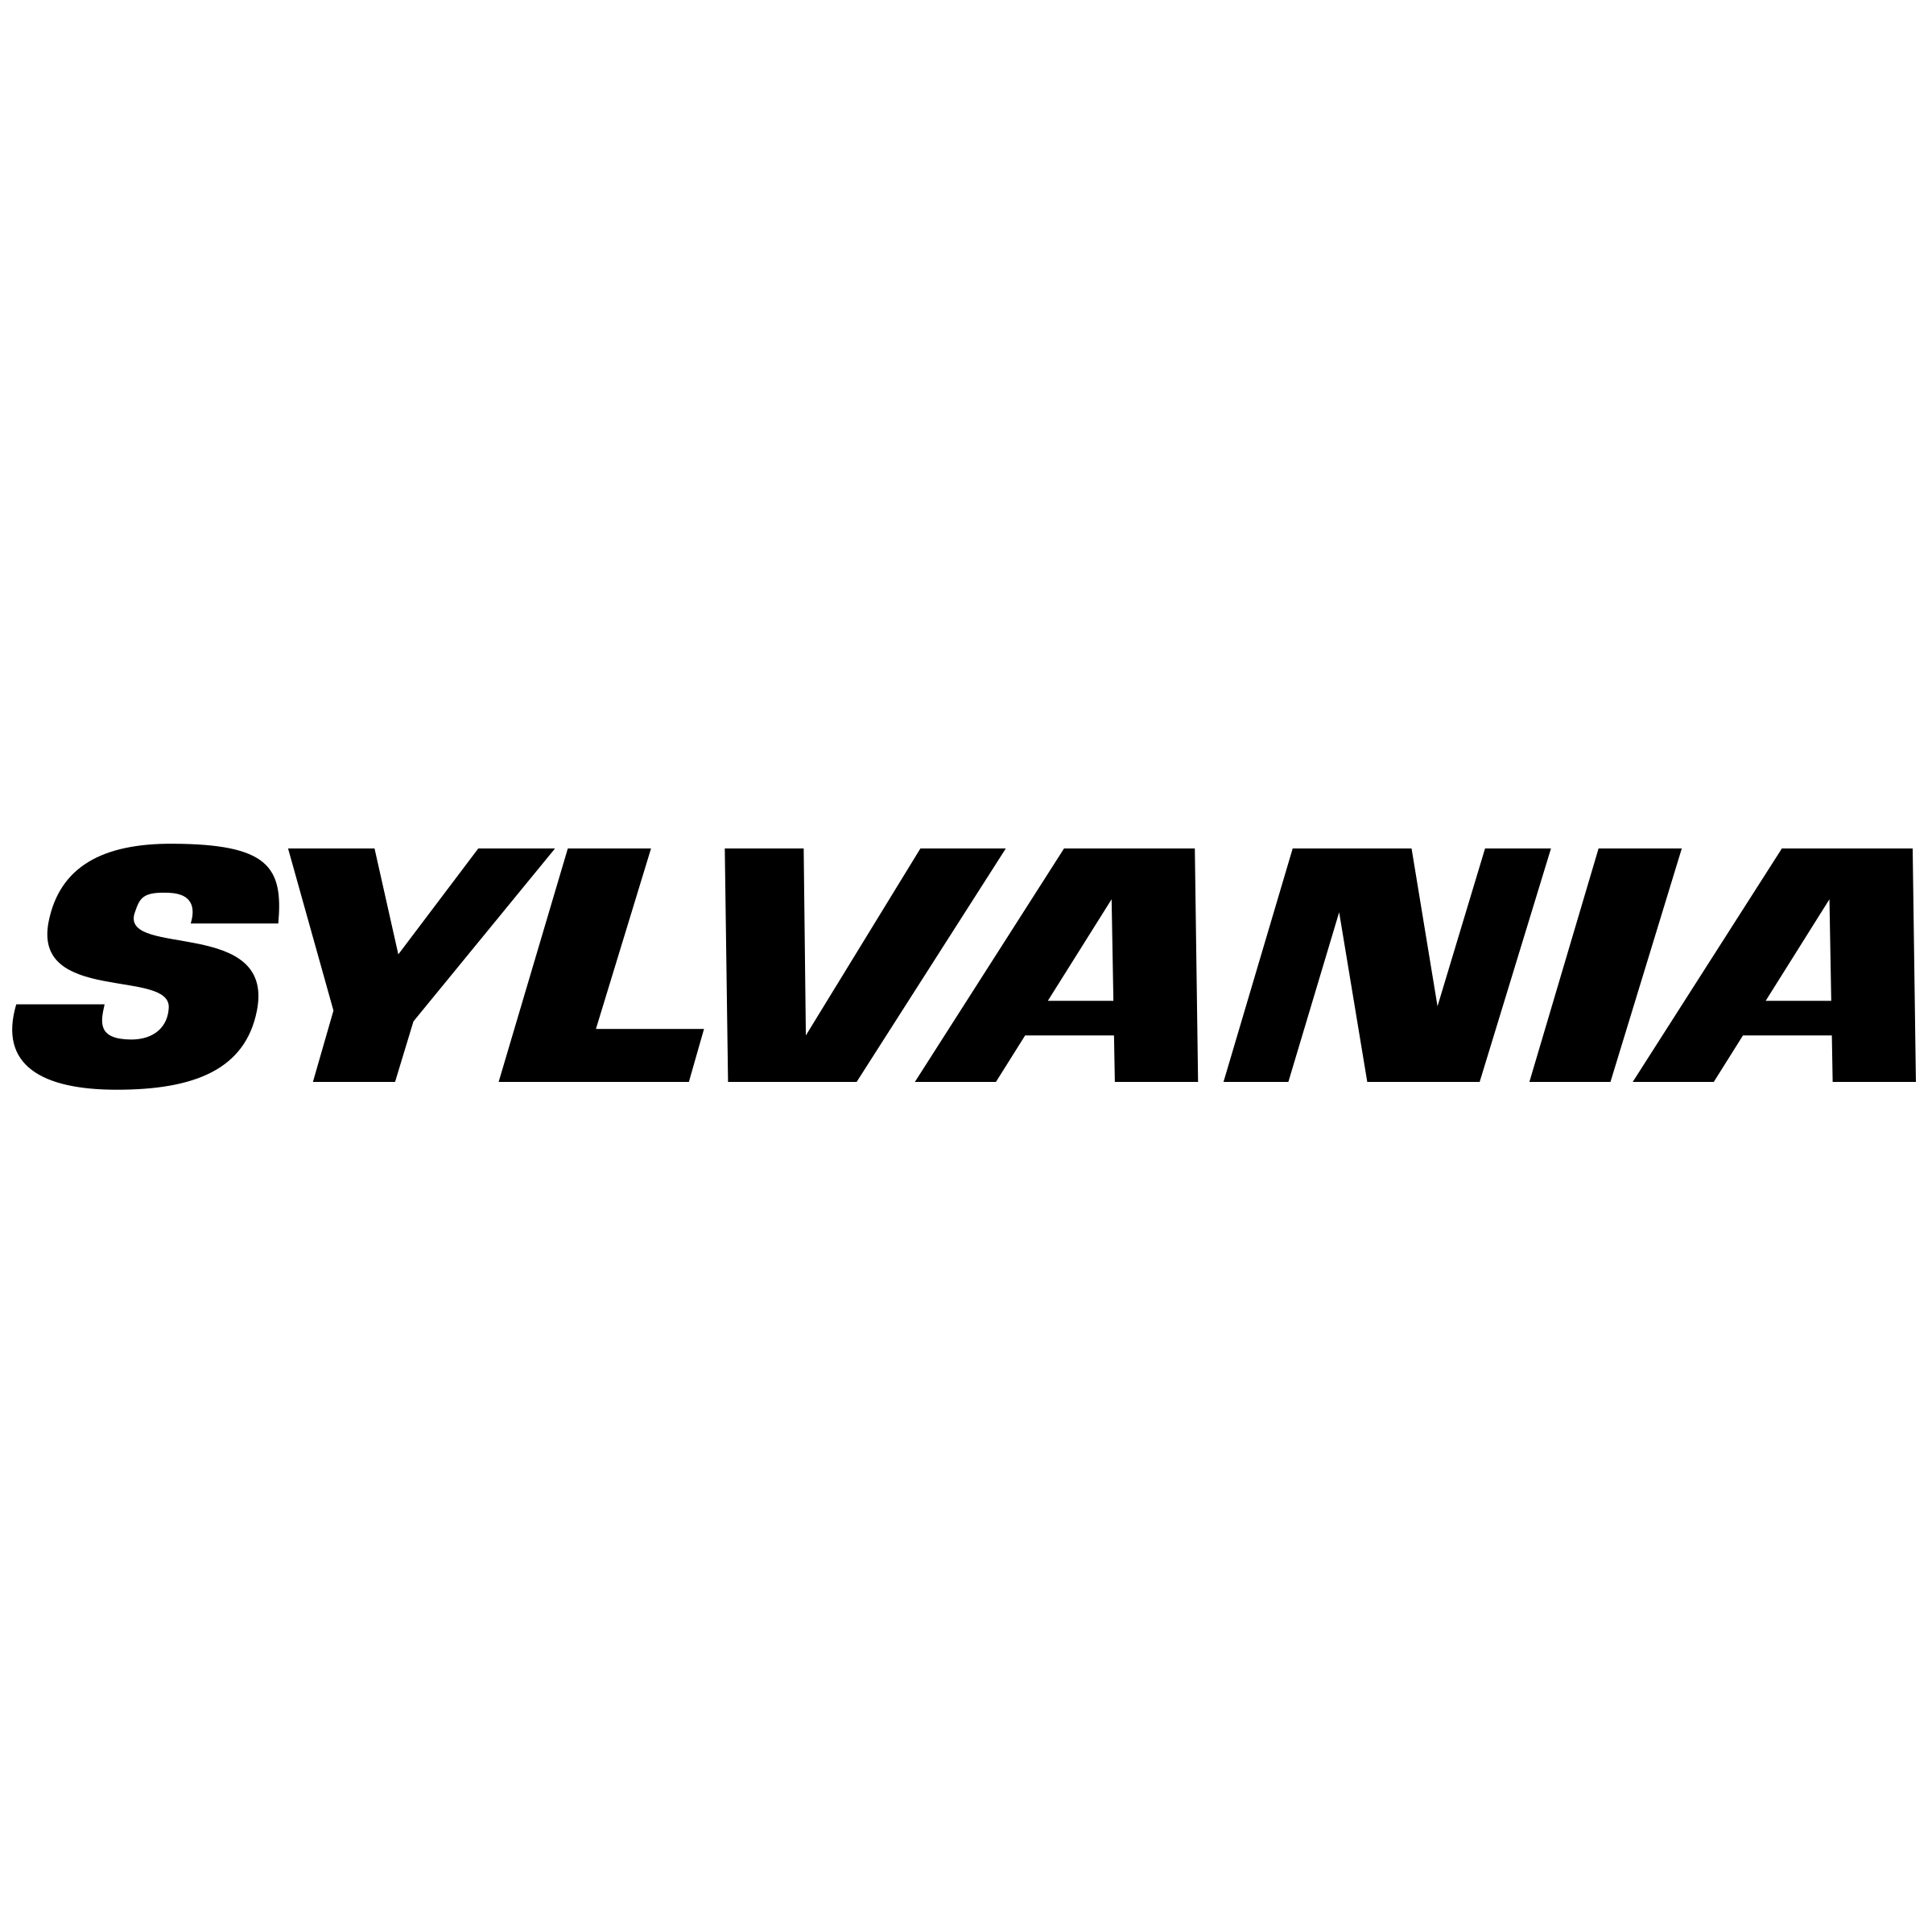 sylvania-logo-png-transparent.png